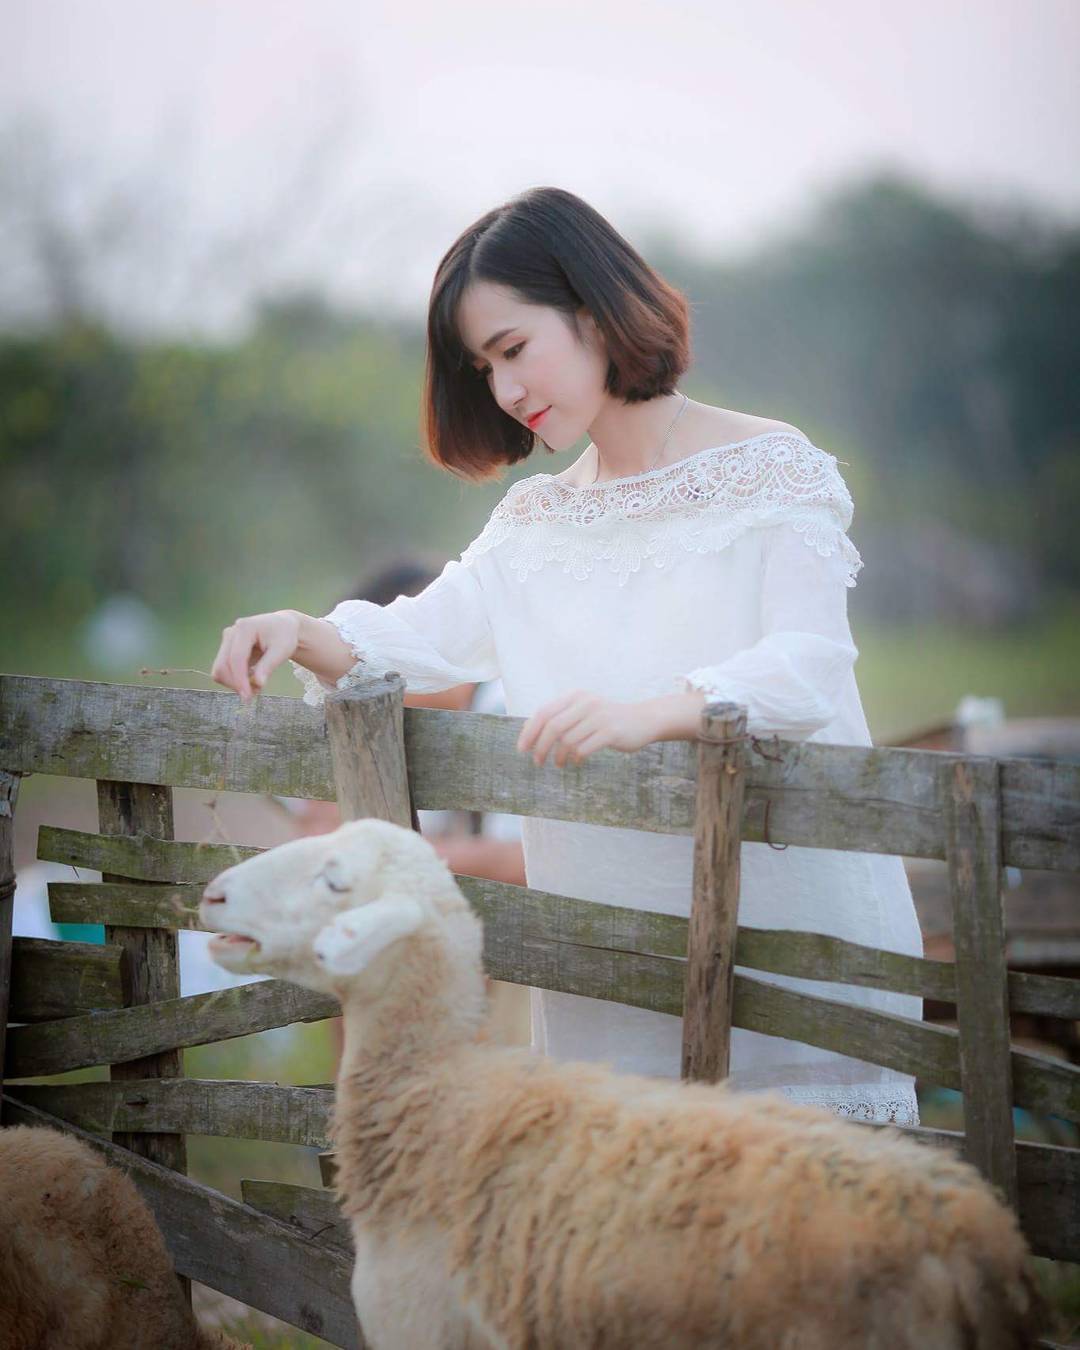 Khám phá 5 đồng cừu đẹp nhất Việt Nam dành cho hội sống ảo